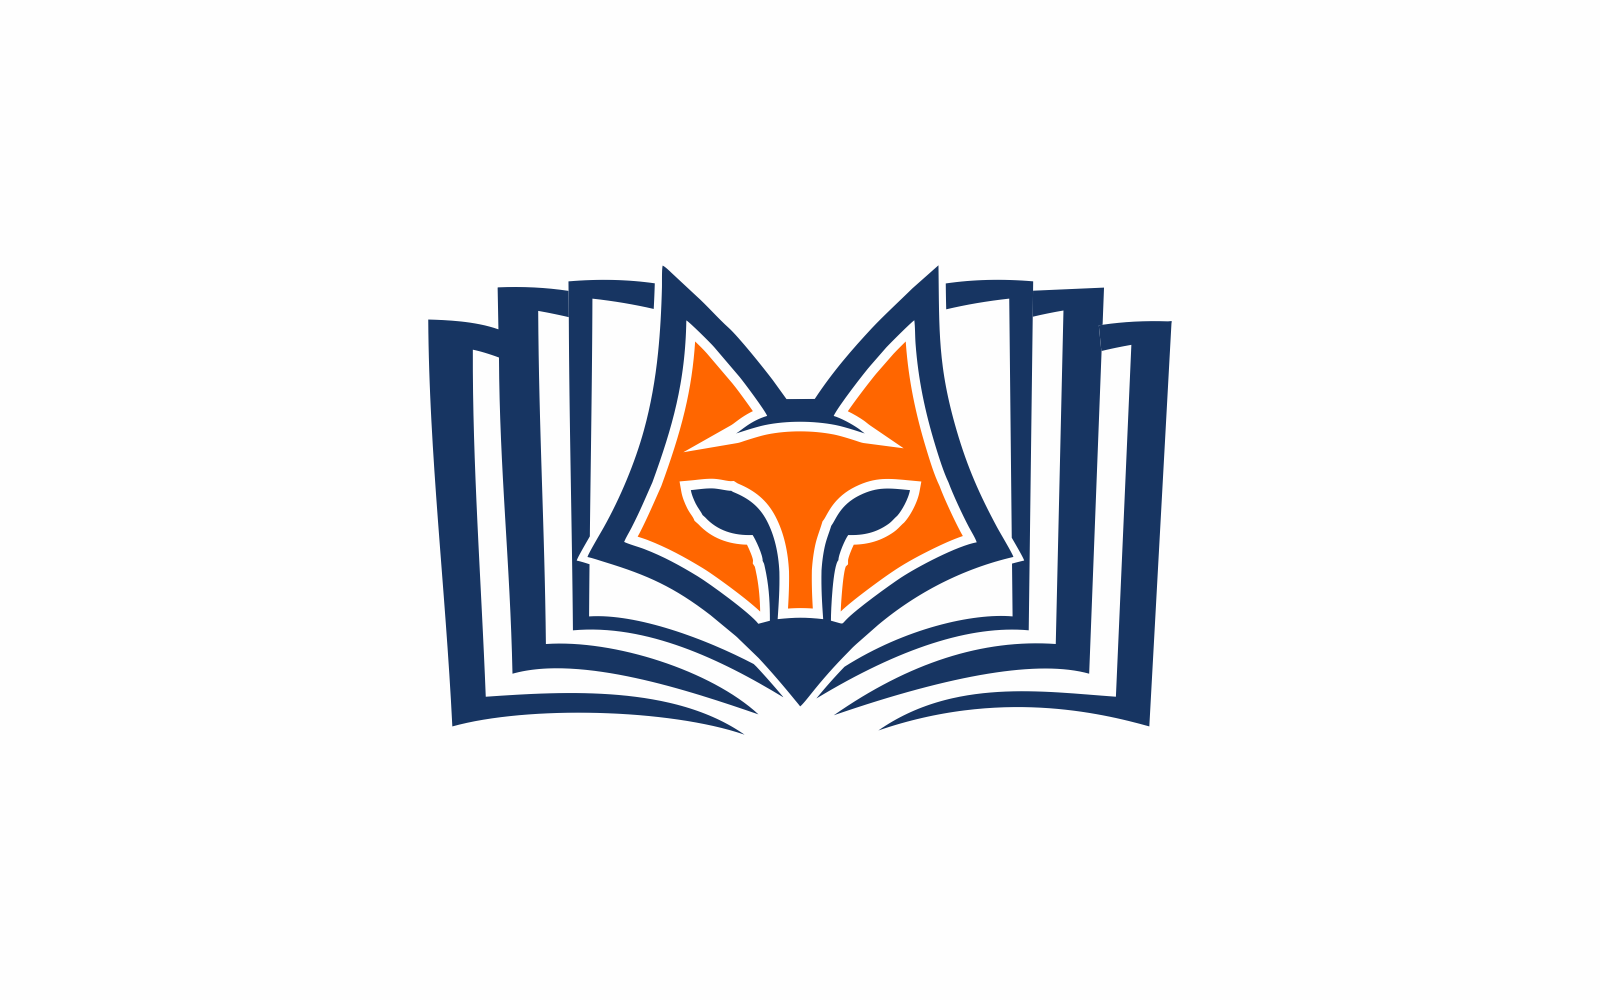 Fox Book Abstract Logo Template